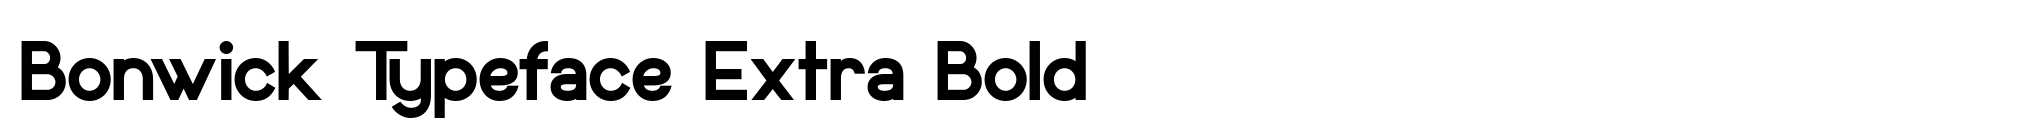 Bonwick Typeface Extra Bold image